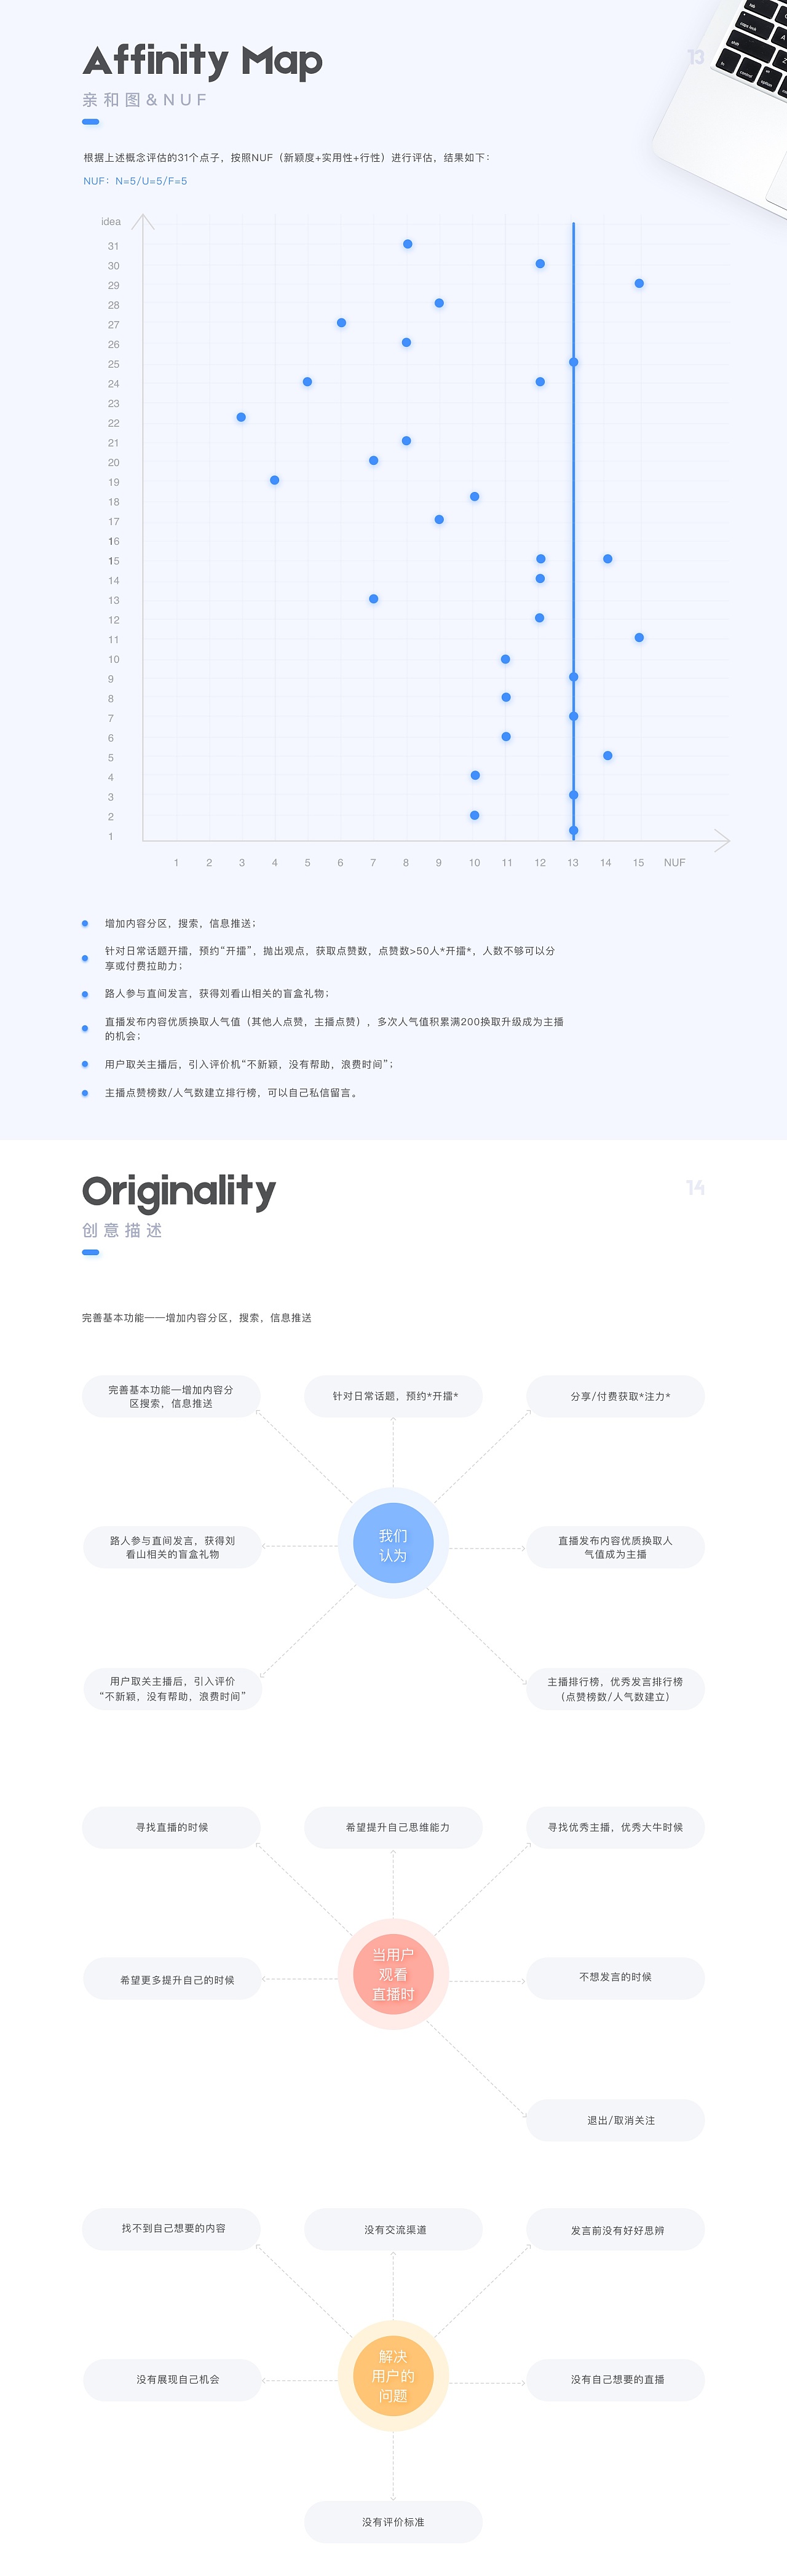 「知群X知乎 中国产品设计大赛」成为更好的自己|UI|APP界面|BridgeQ